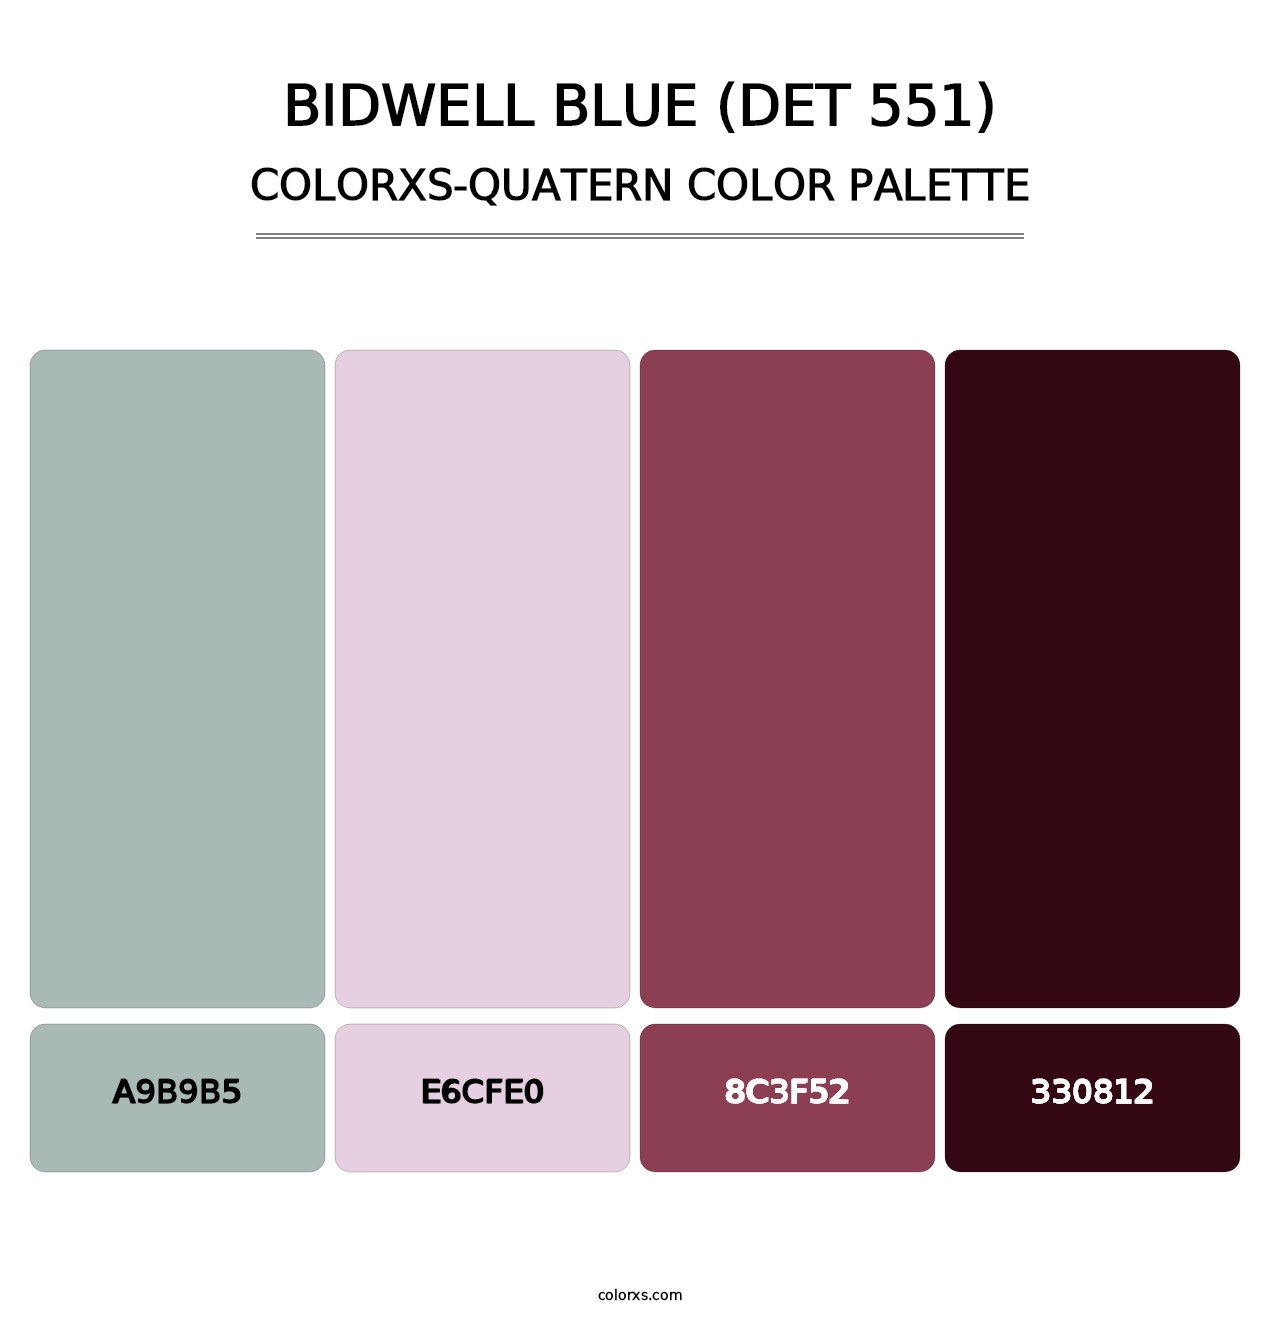 Bidwell Blue (DET 551) - Colorxs Quatern Palette